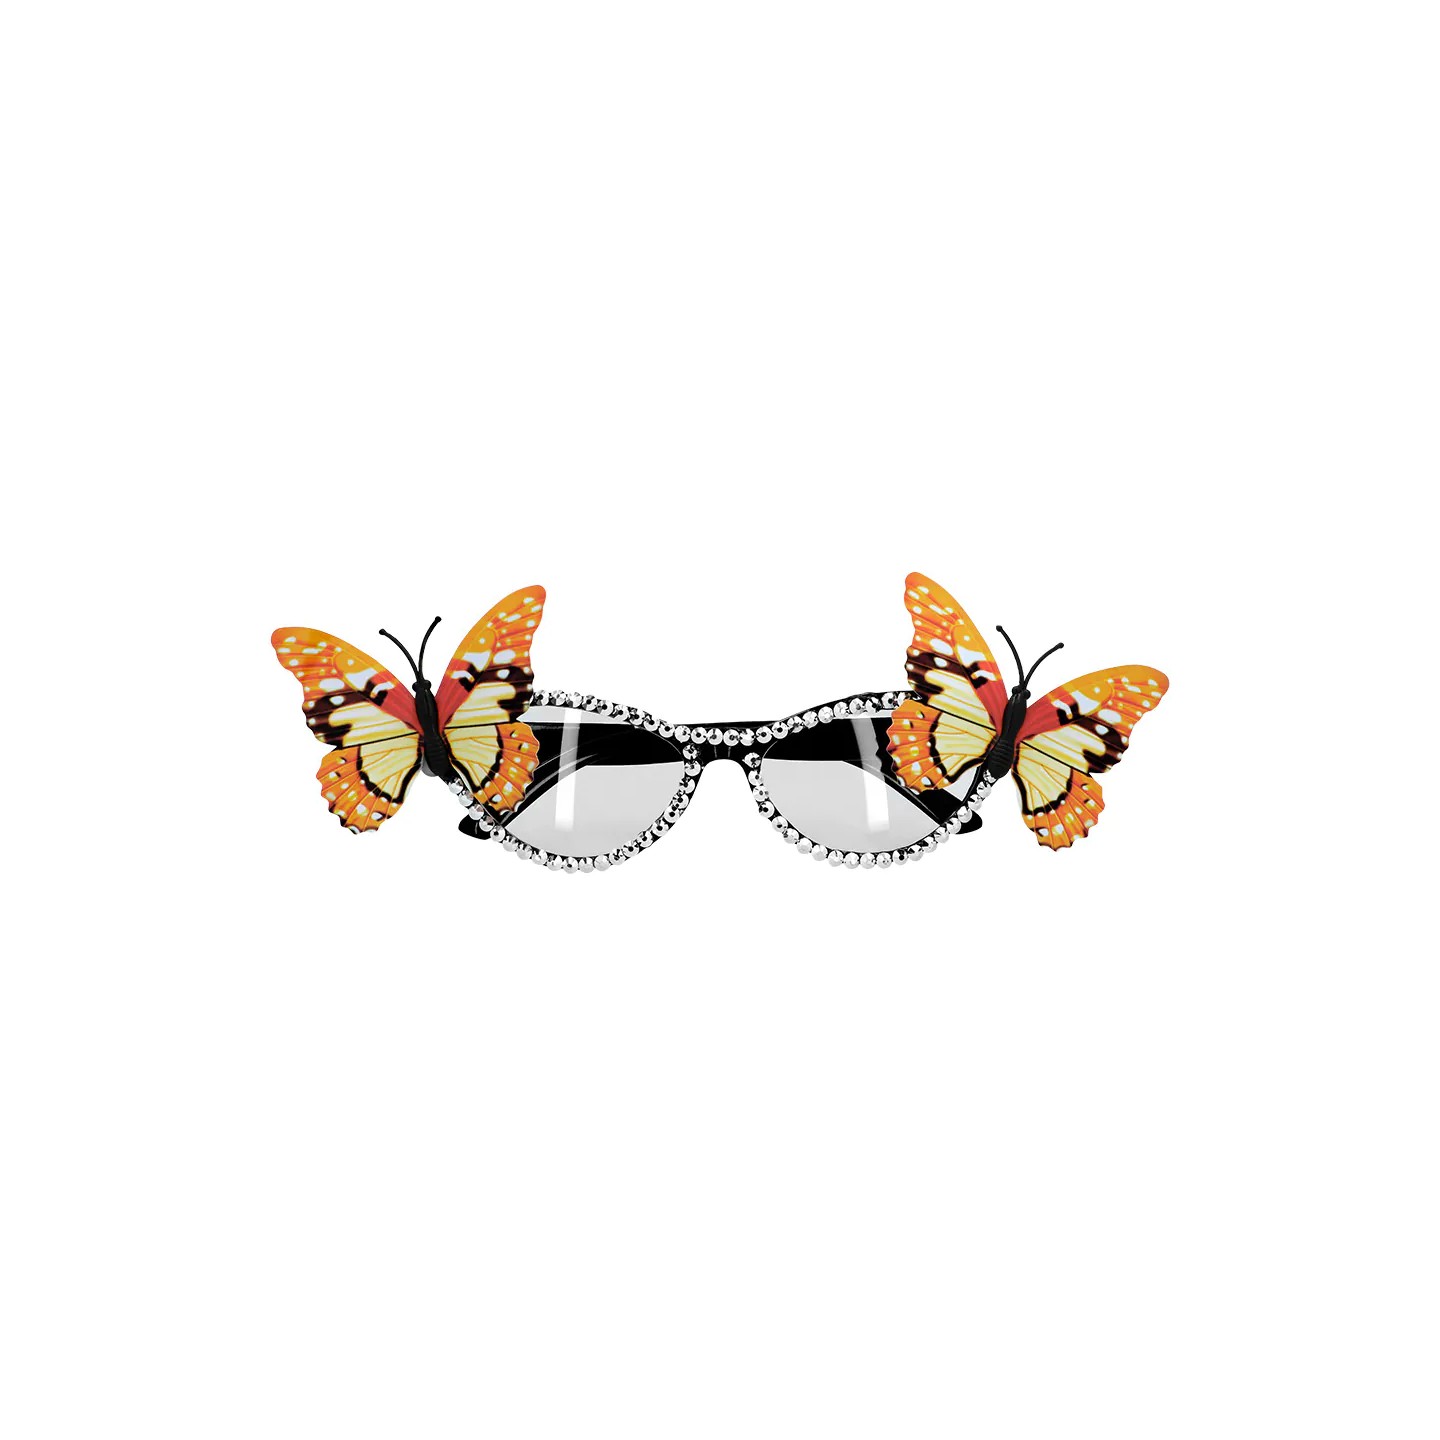 gekke feestbril grappige party bril vlinder